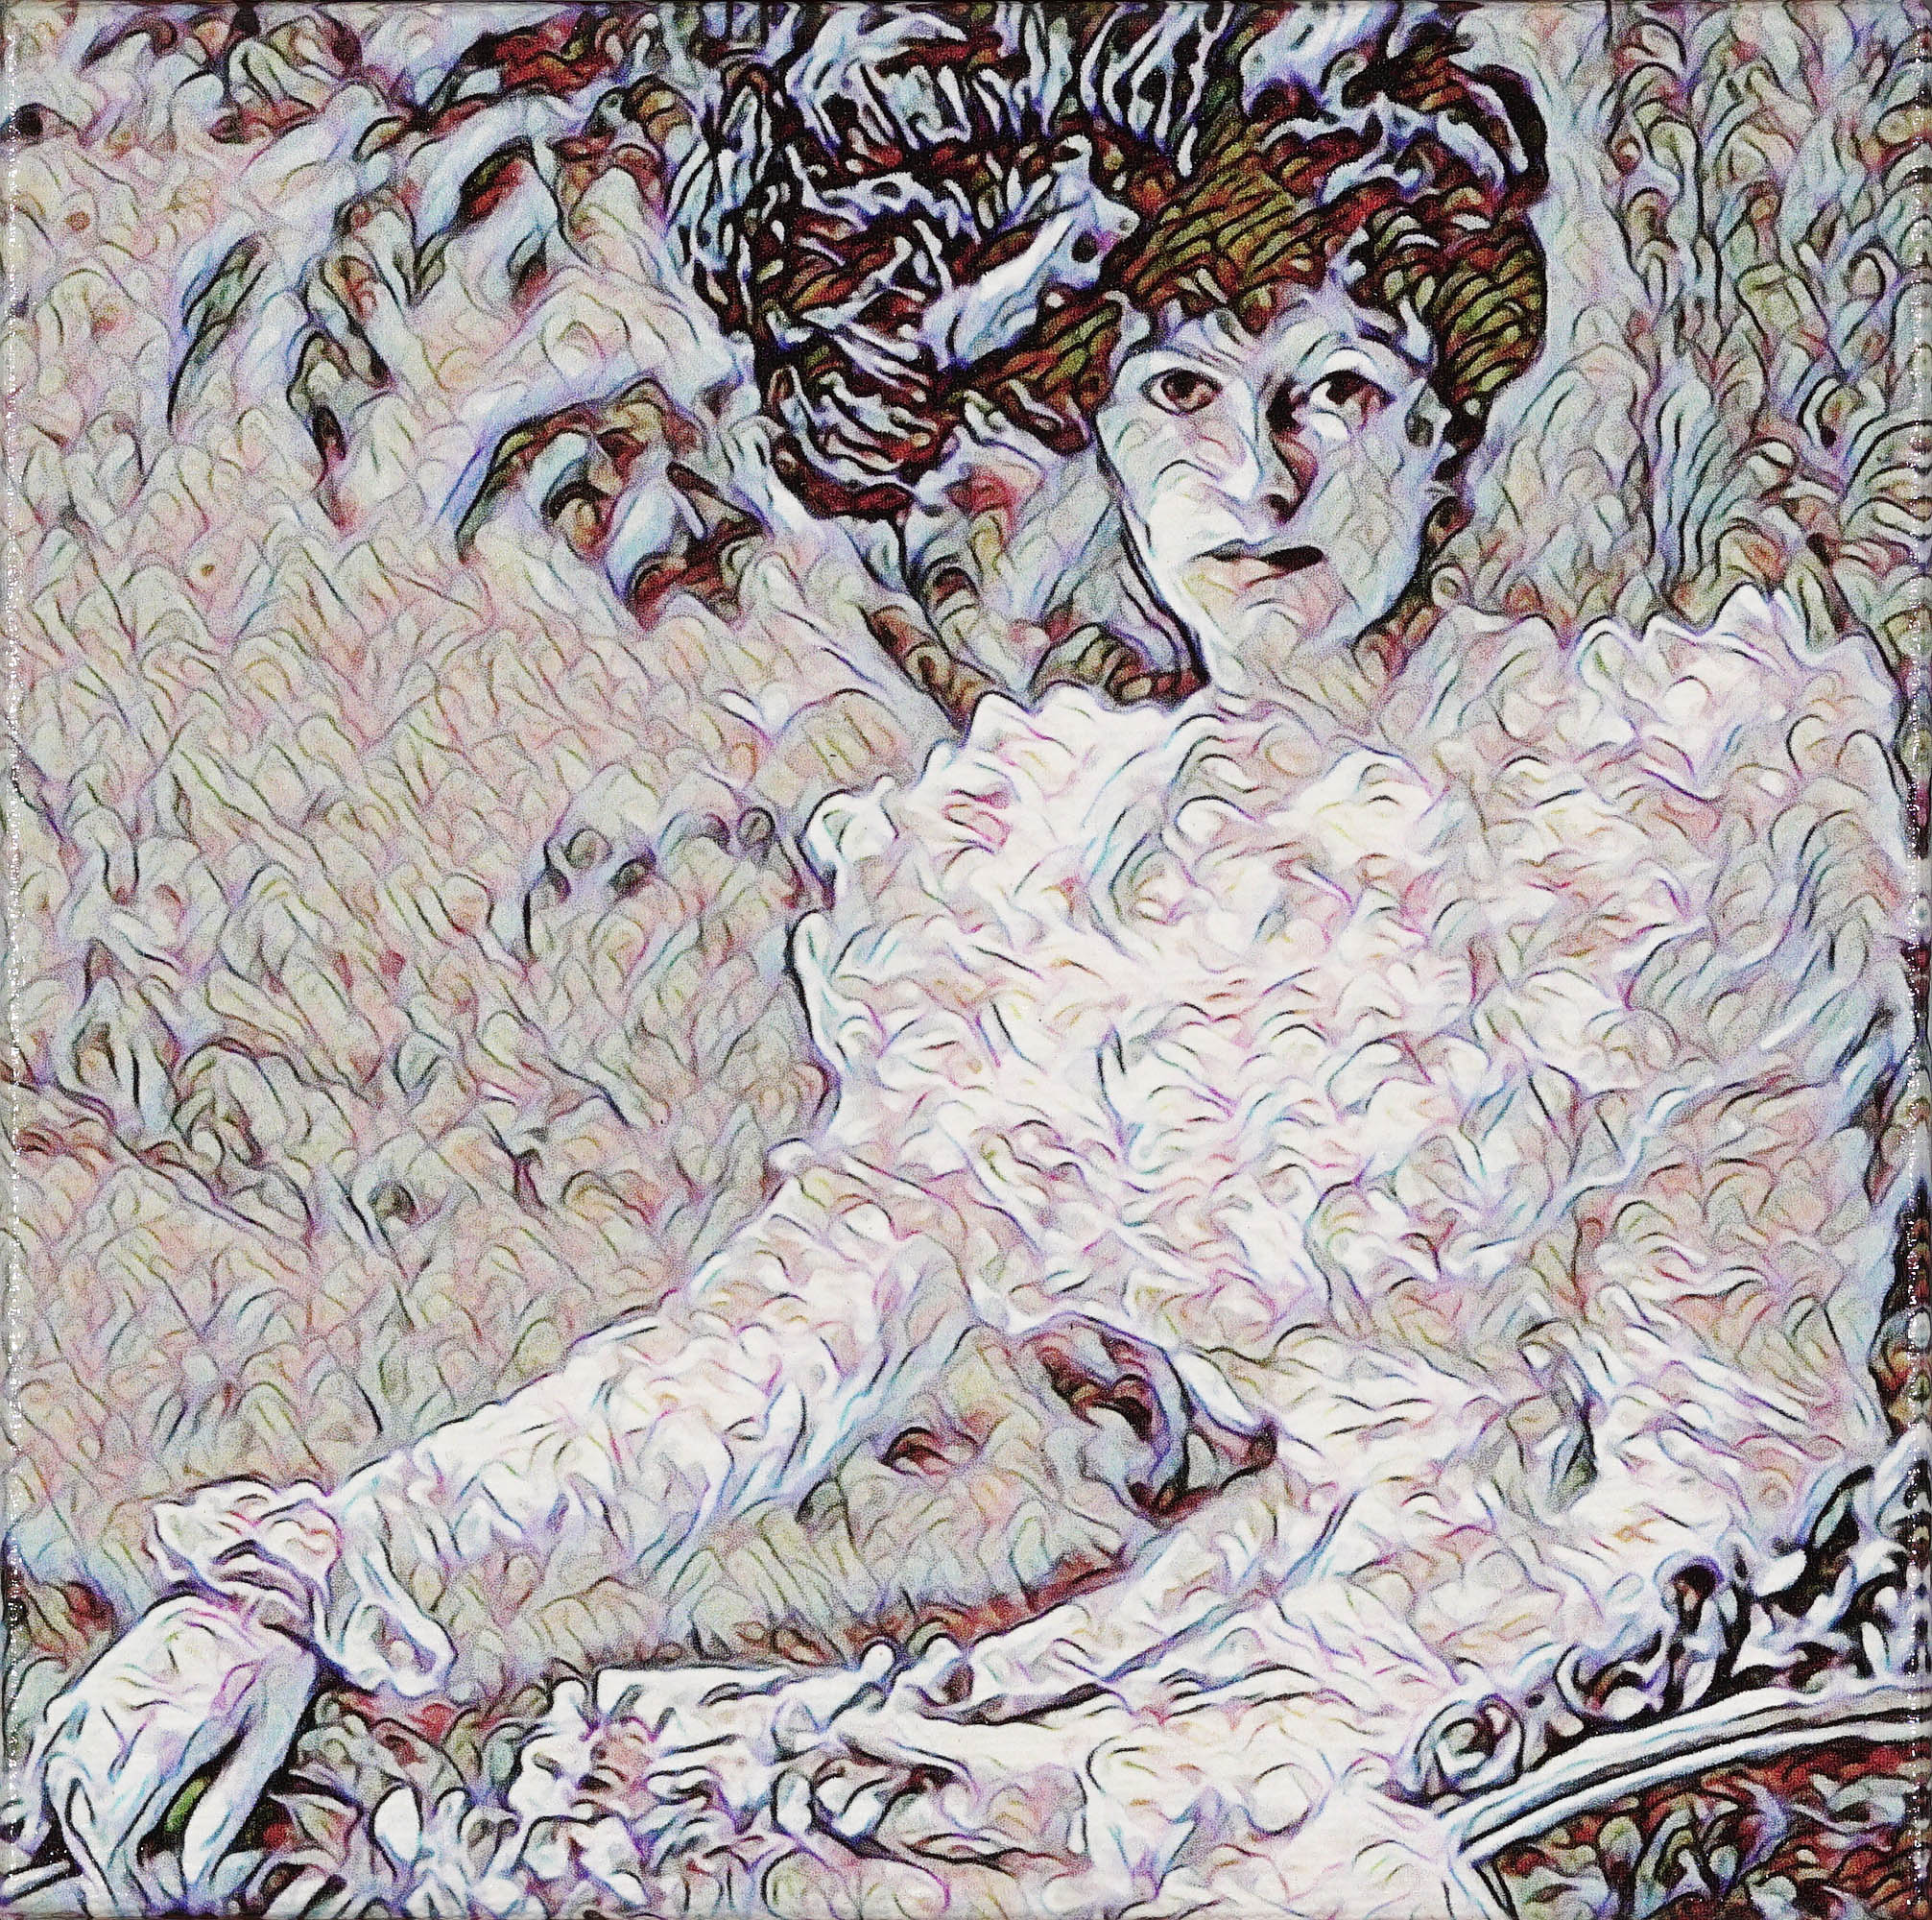 Rhee Reamy, Lady in White, digital art